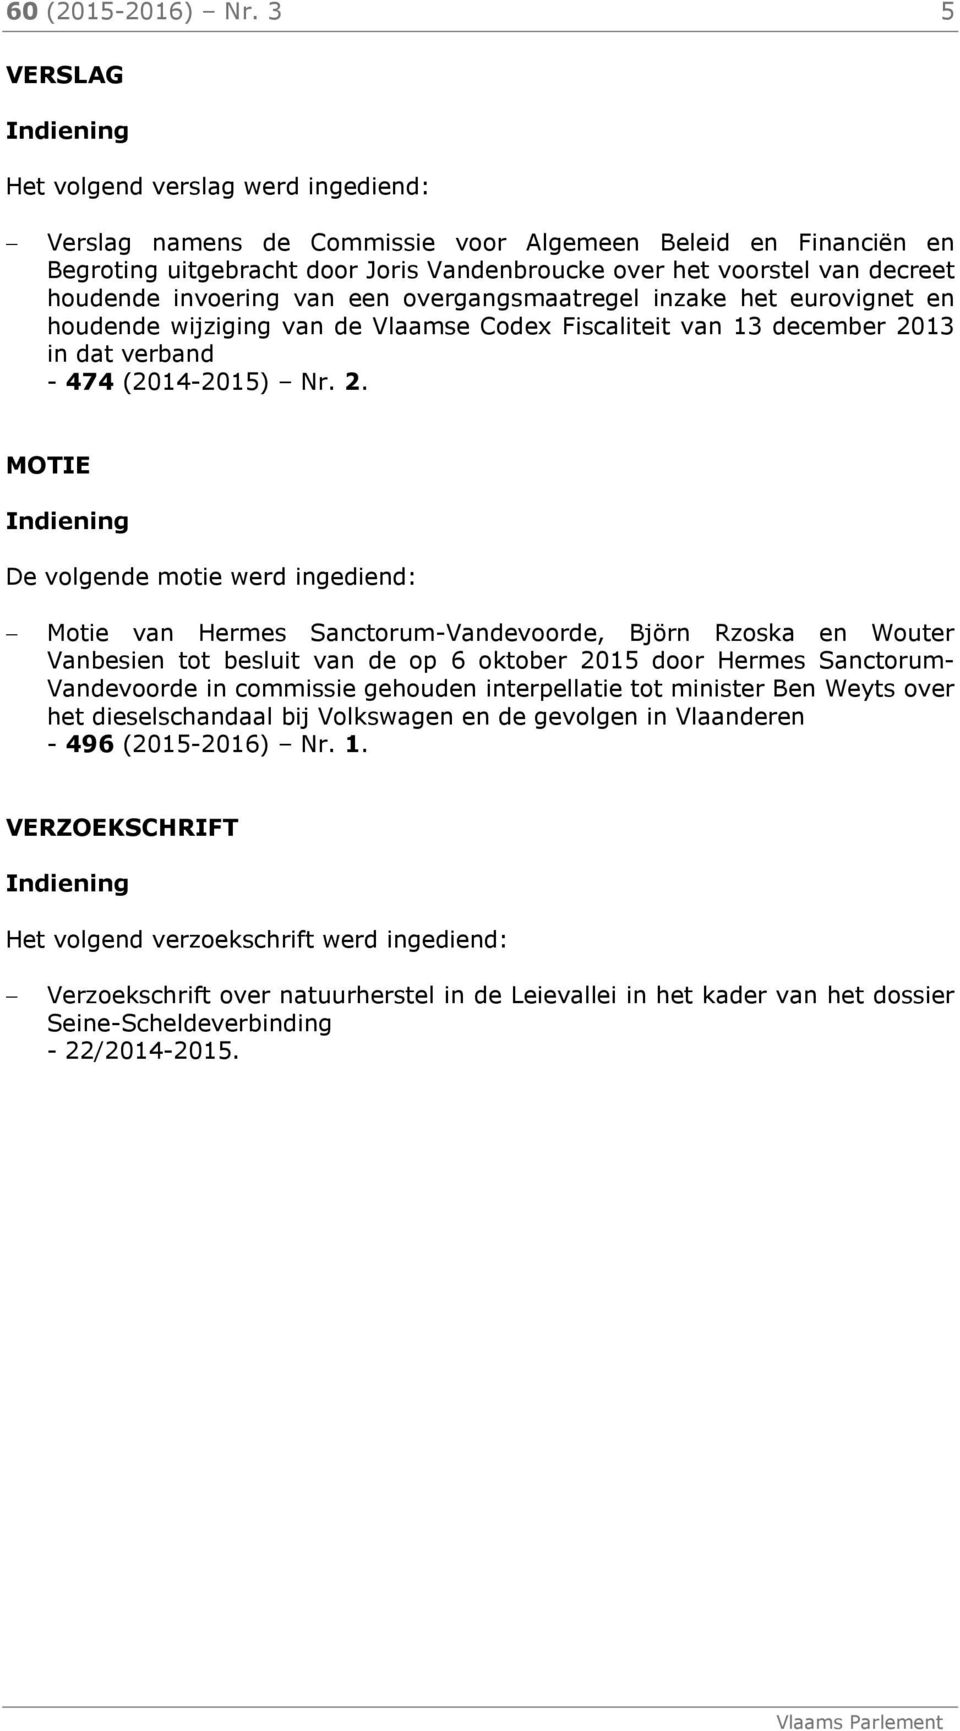 houdende invoering van een overgangsmaatregel inzake het eurovignet en houdende wijziging van de Vlaamse Codex Fiscaliteit van 13 december 20